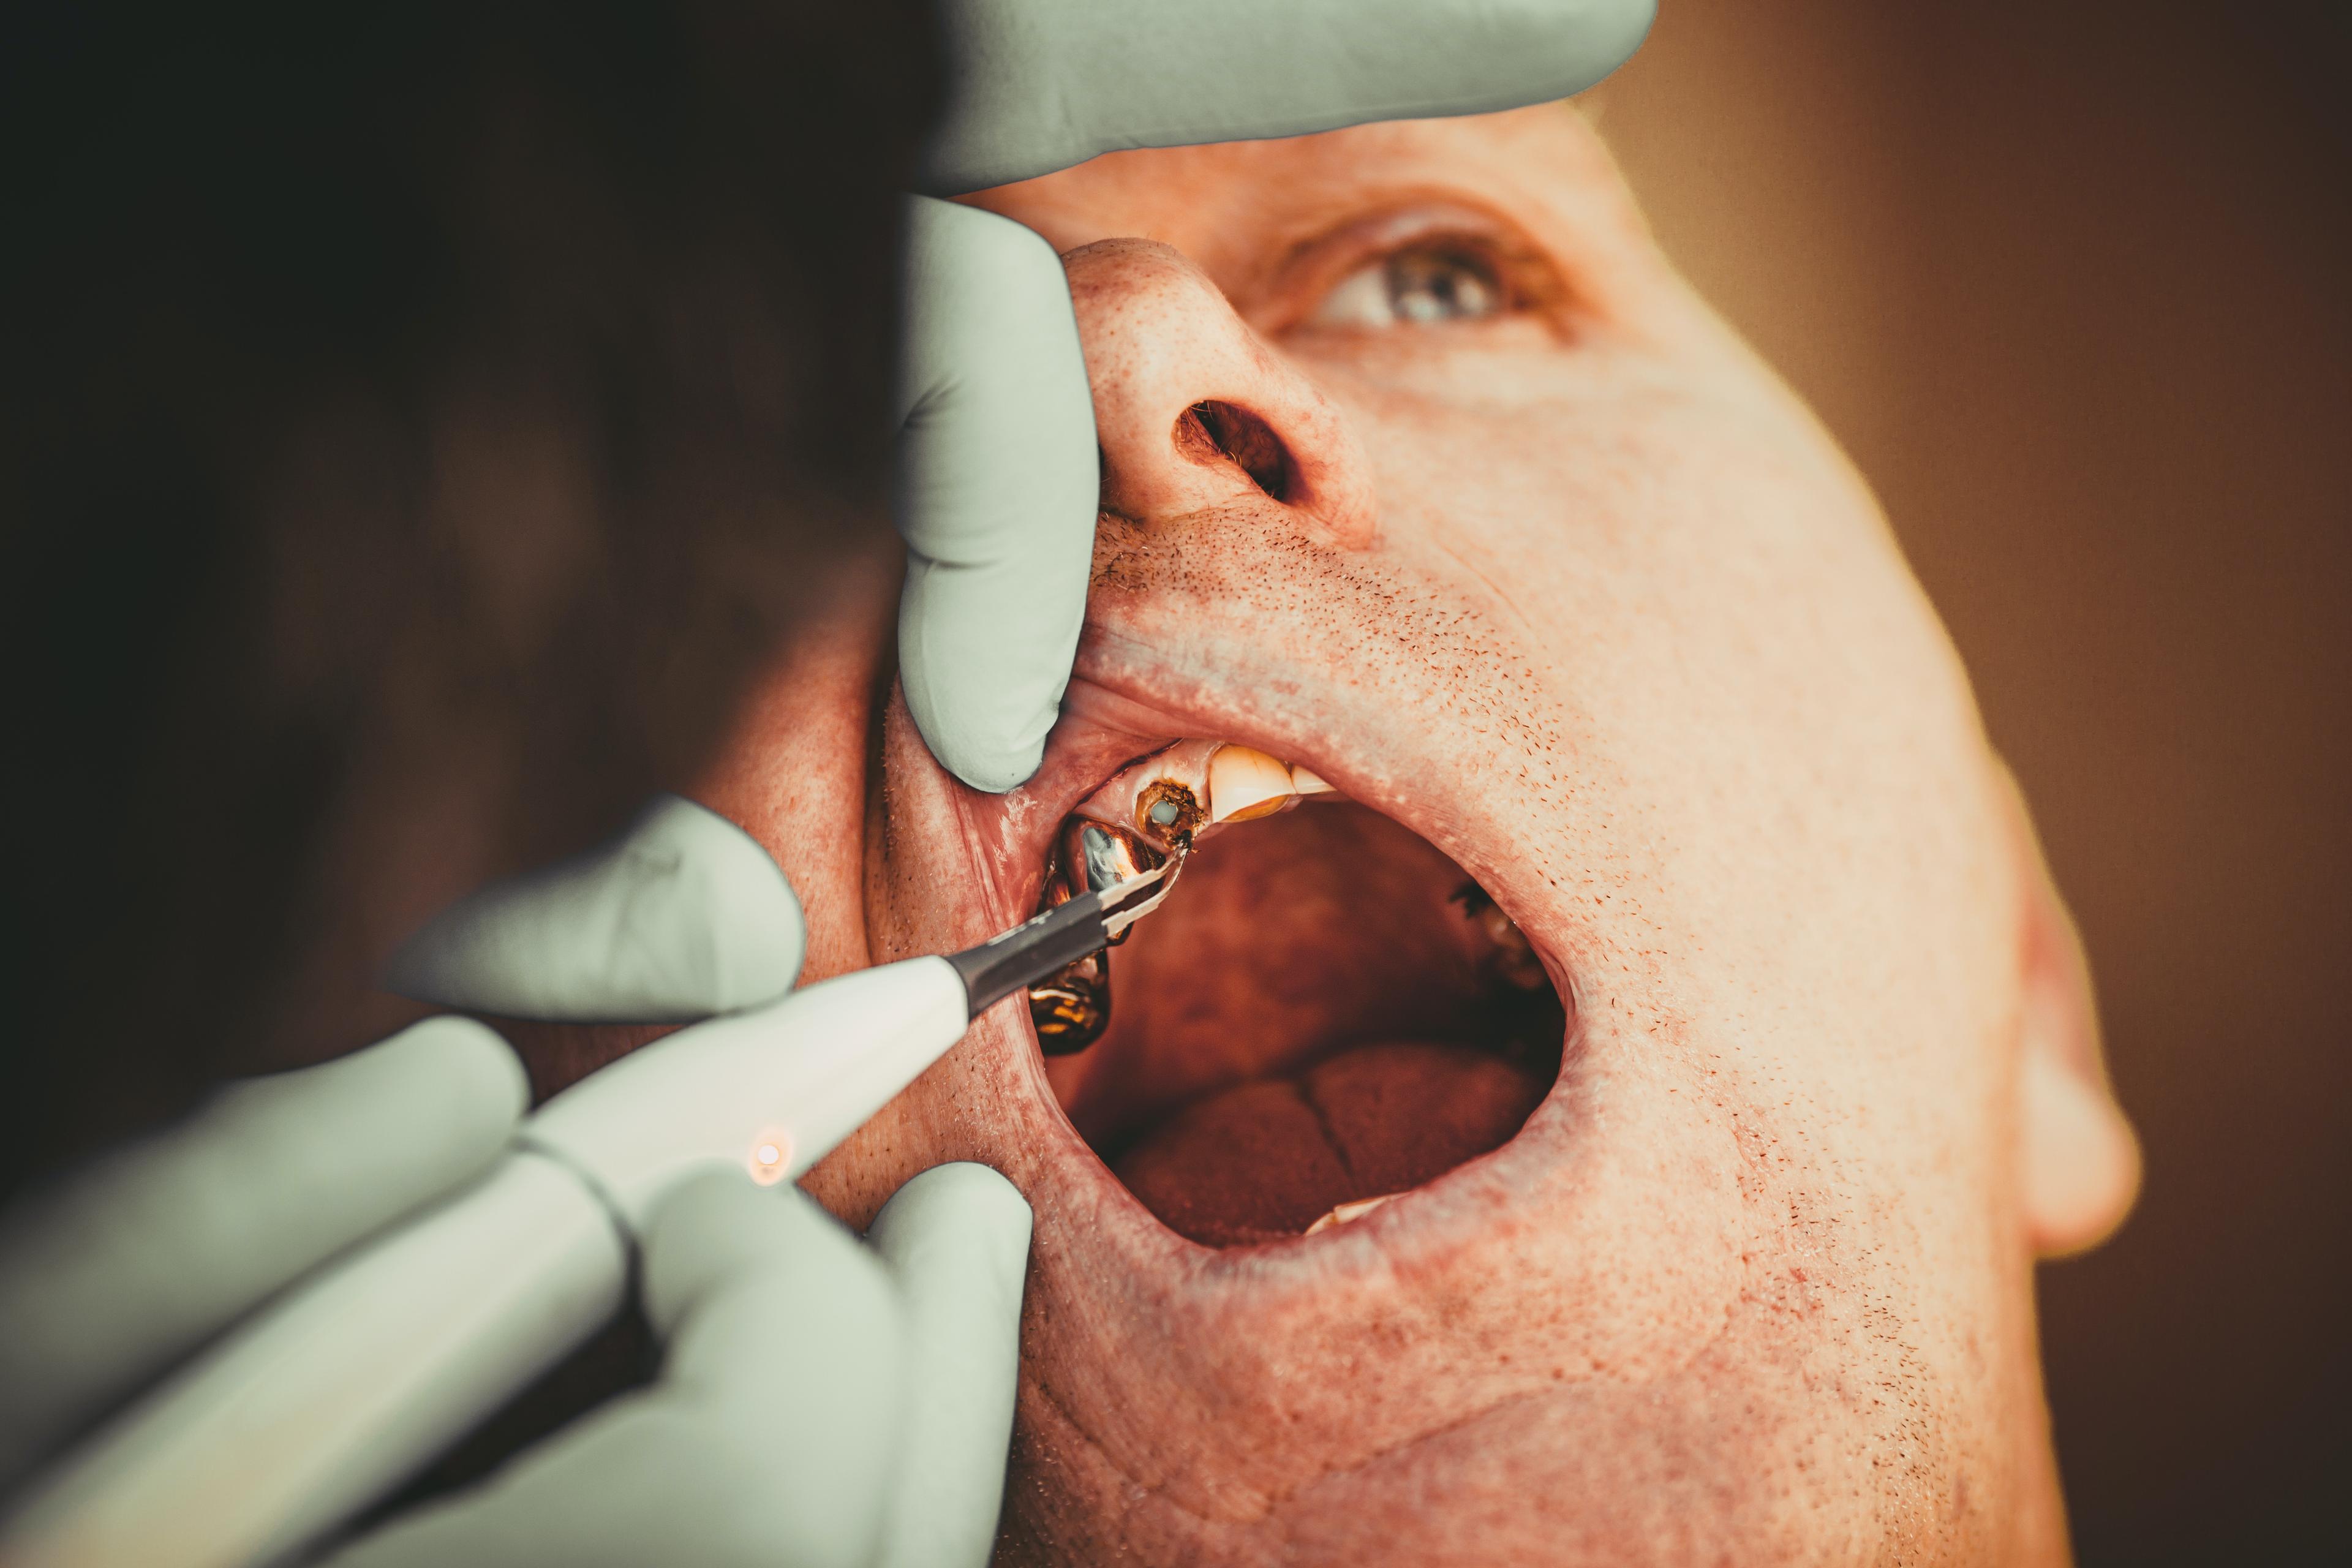 Próchnica początkowa - jak się zaczyna próchnica i na co zwracać uwagę? Zapobieganie próchnicy zębów mlecznych. Próchnica u dzieci - objawy i leczenie próchnicy zębów mlecznych. Jak wyleczyć próchnicę – skuteczne metody leczenia